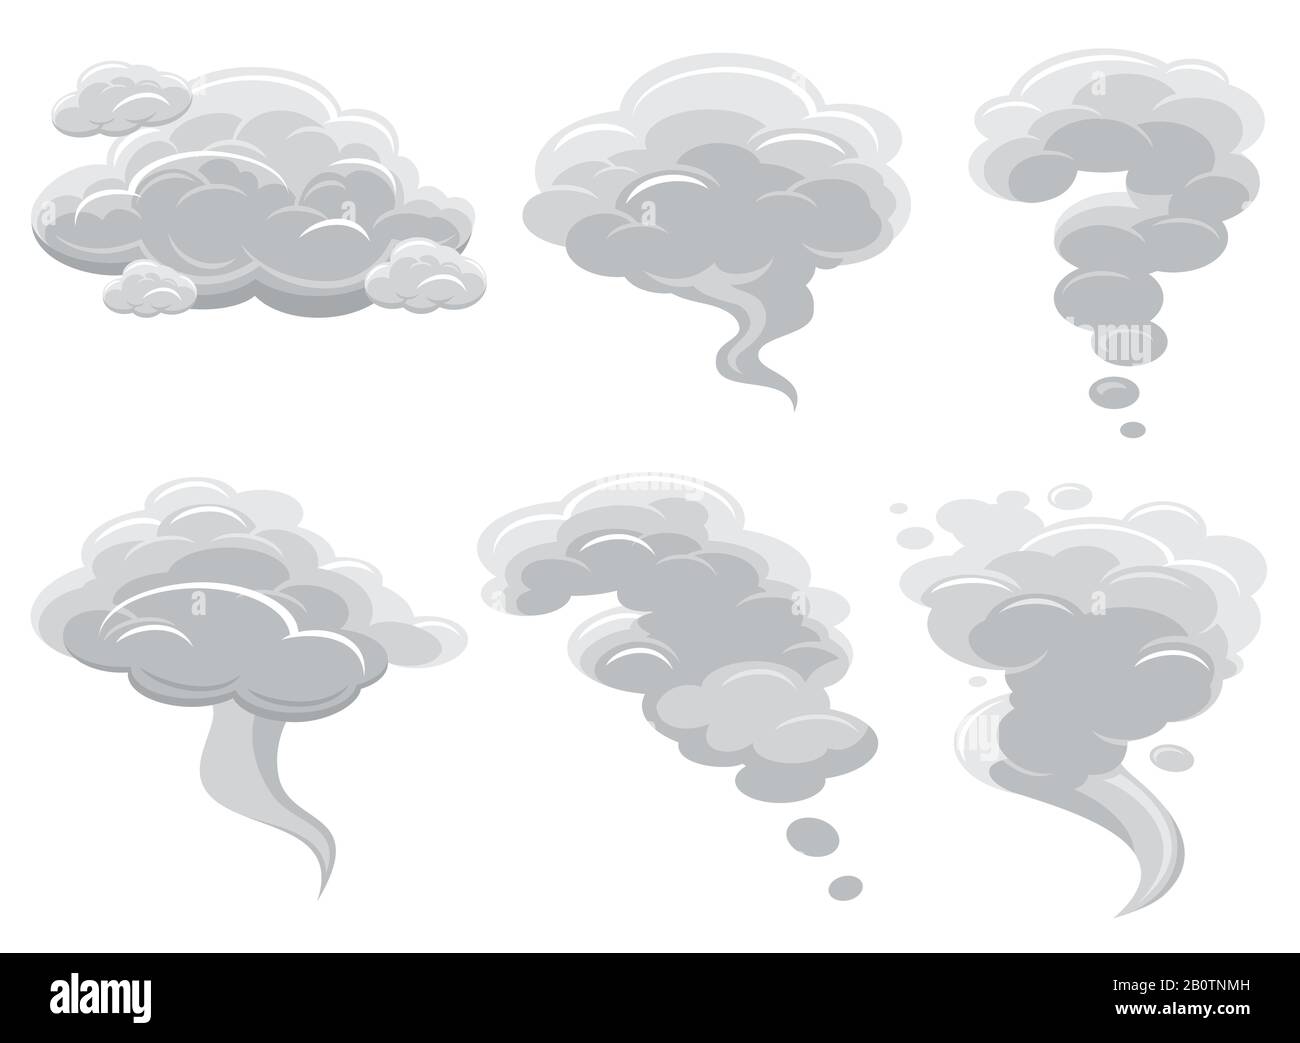 Fumetto fumando nuvole e fumetto cumulus cloud raccolta vettoriale. Illustrazione di cumulonimbus fumetto Air cloud Illustrazione Vettoriale